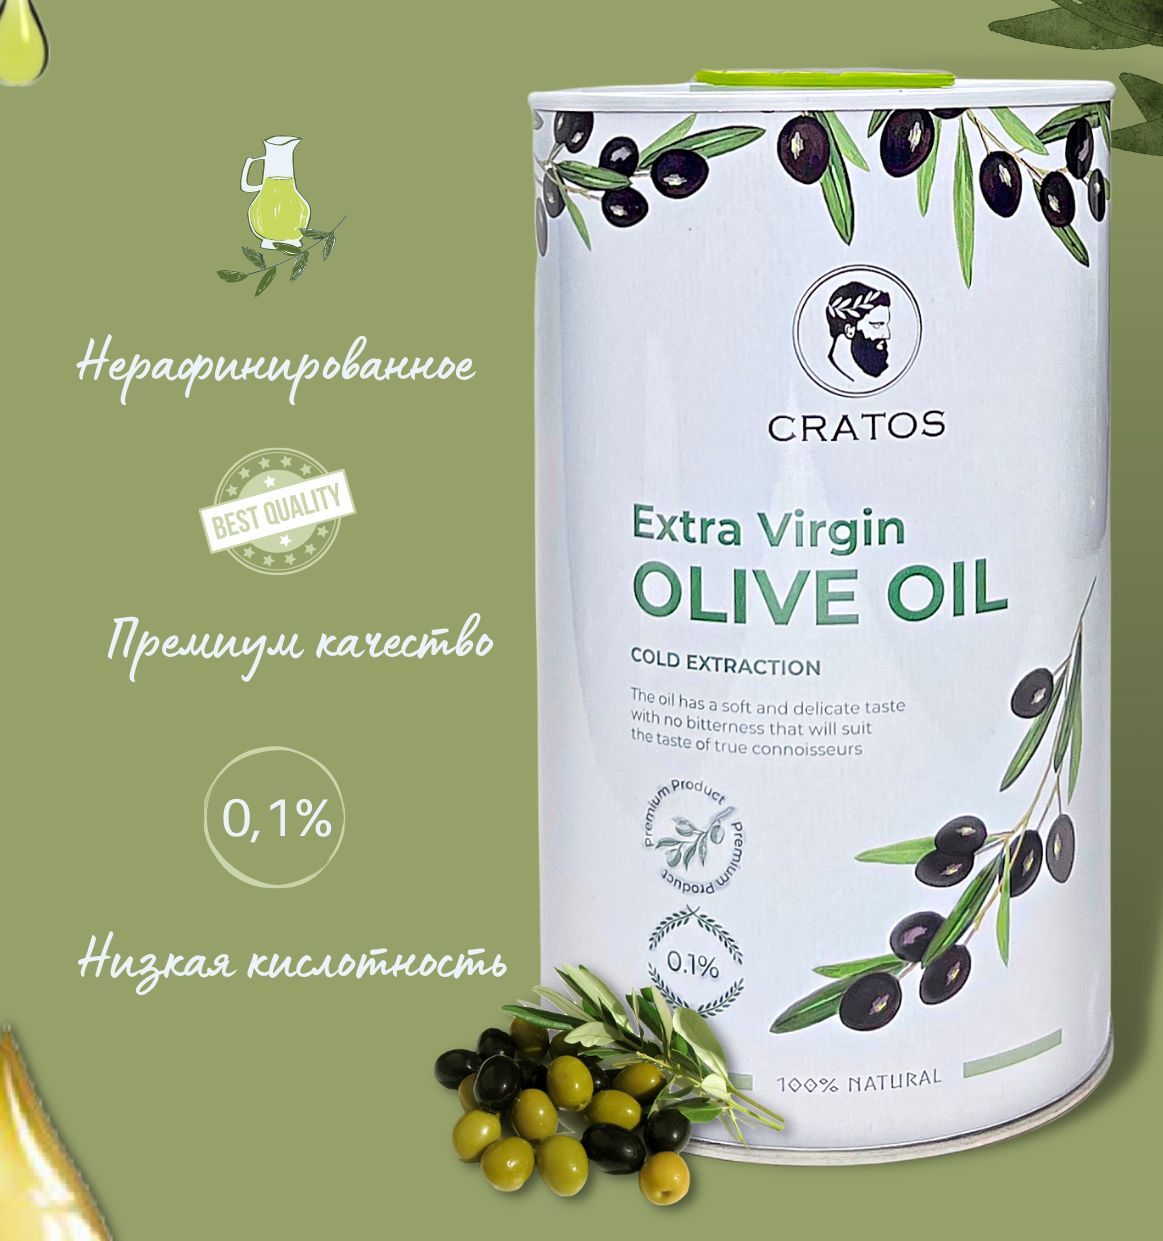 Cratos оливковое масло Extra Virgin 1л Греция. Масло оливковое Cratos Cold Extraction. Оливковое масло Cratos желтая этикетка. Масло оливковое Cratos Cold Extraction где производят.